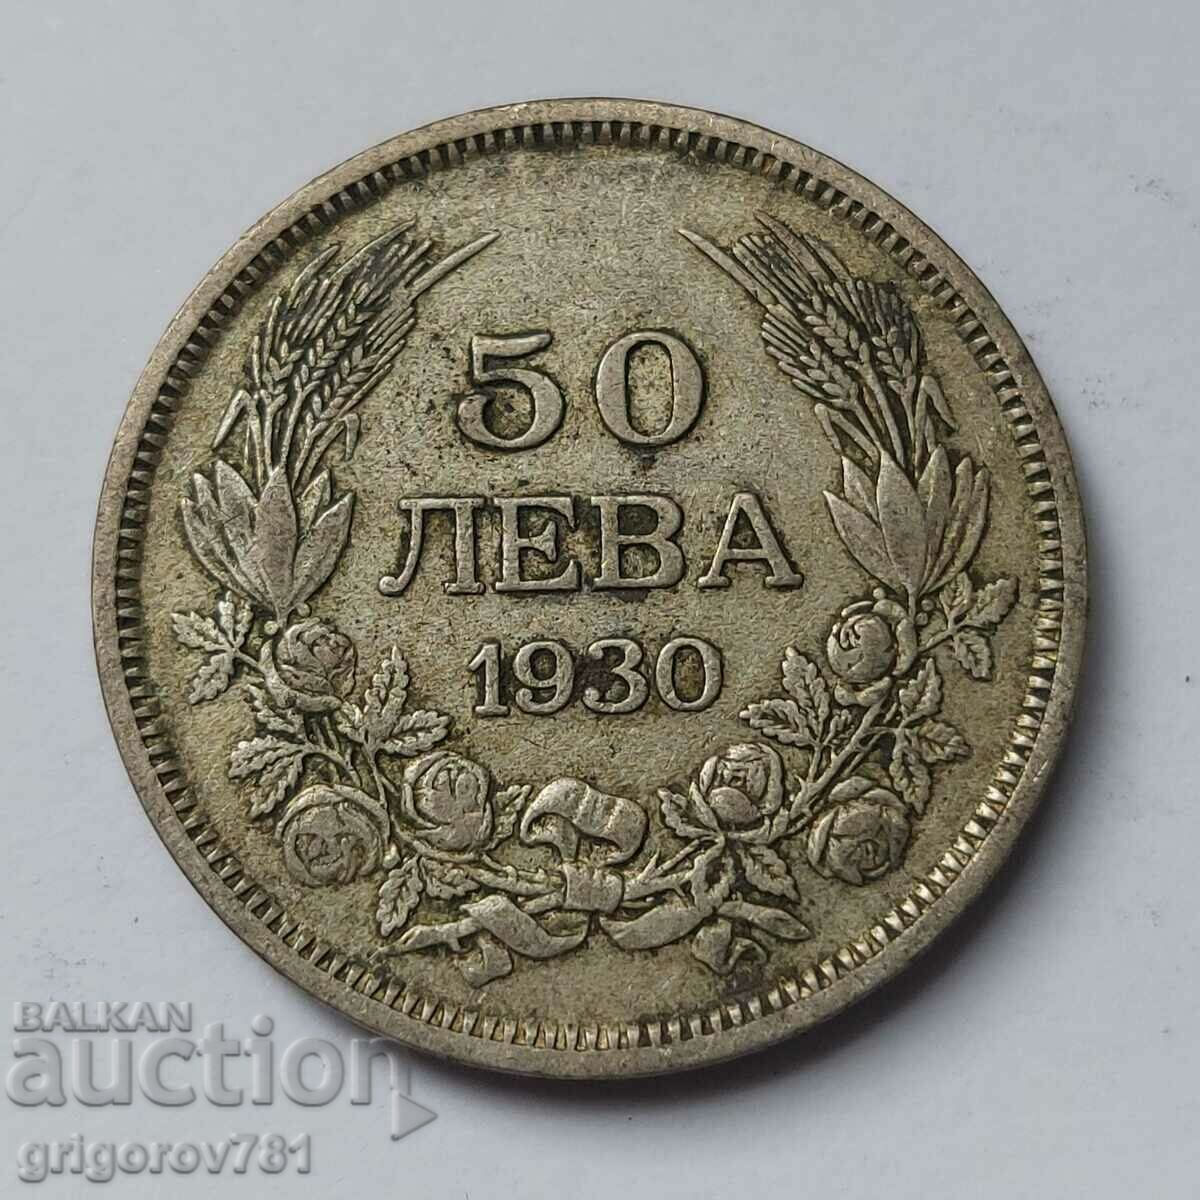 Ασήμι 50 λέβα Βουλγαρία 1930 - ασημένιο νόμισμα #56